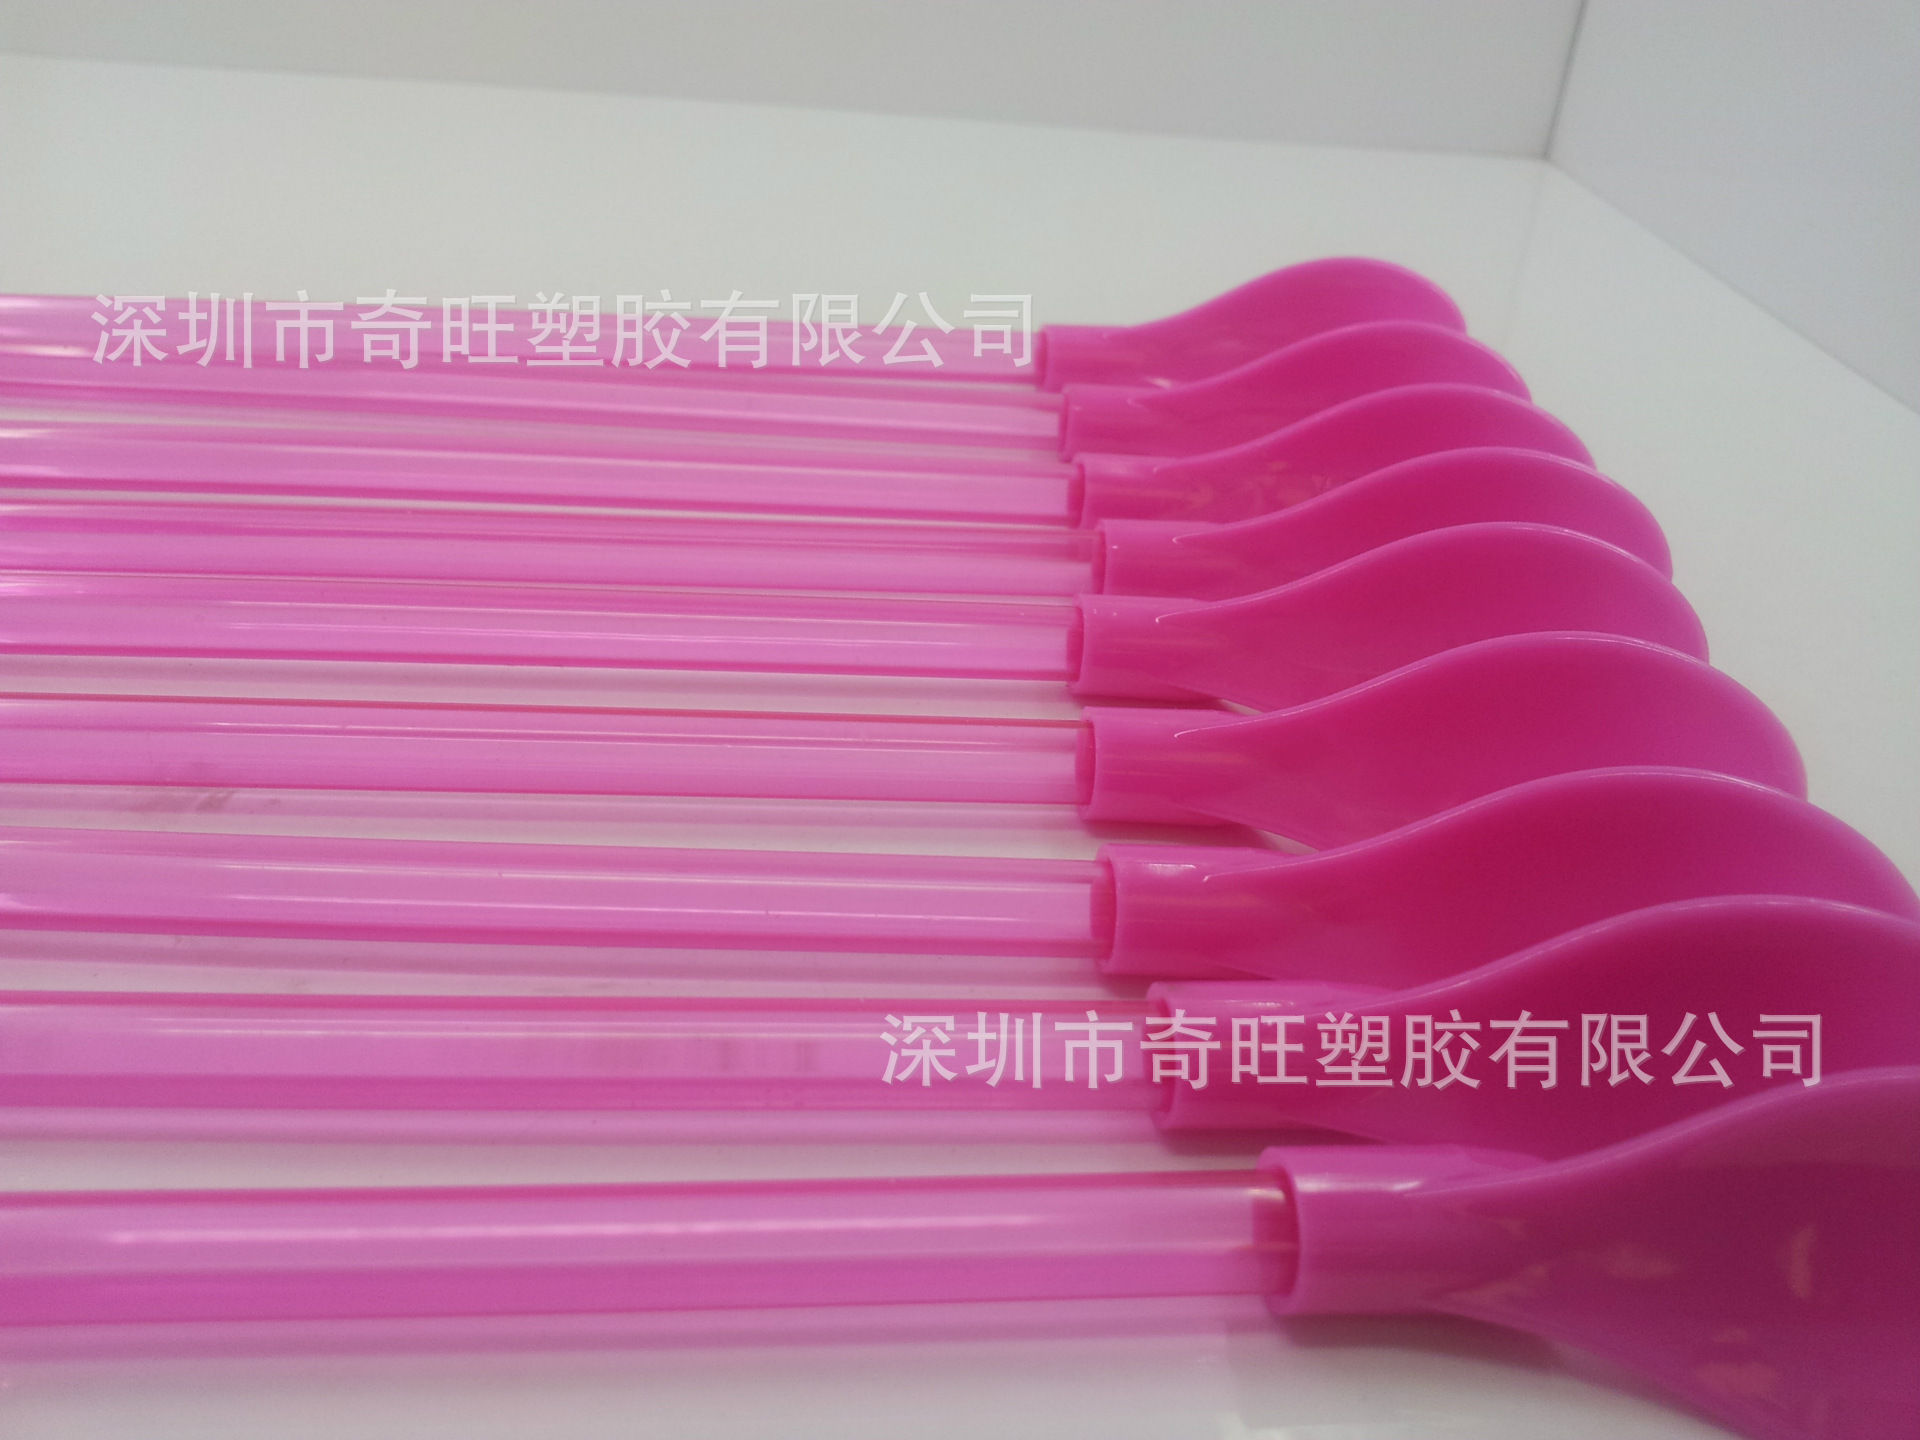 冰沙塑胶吸管勺 PETG材质PVC塑胶勺子